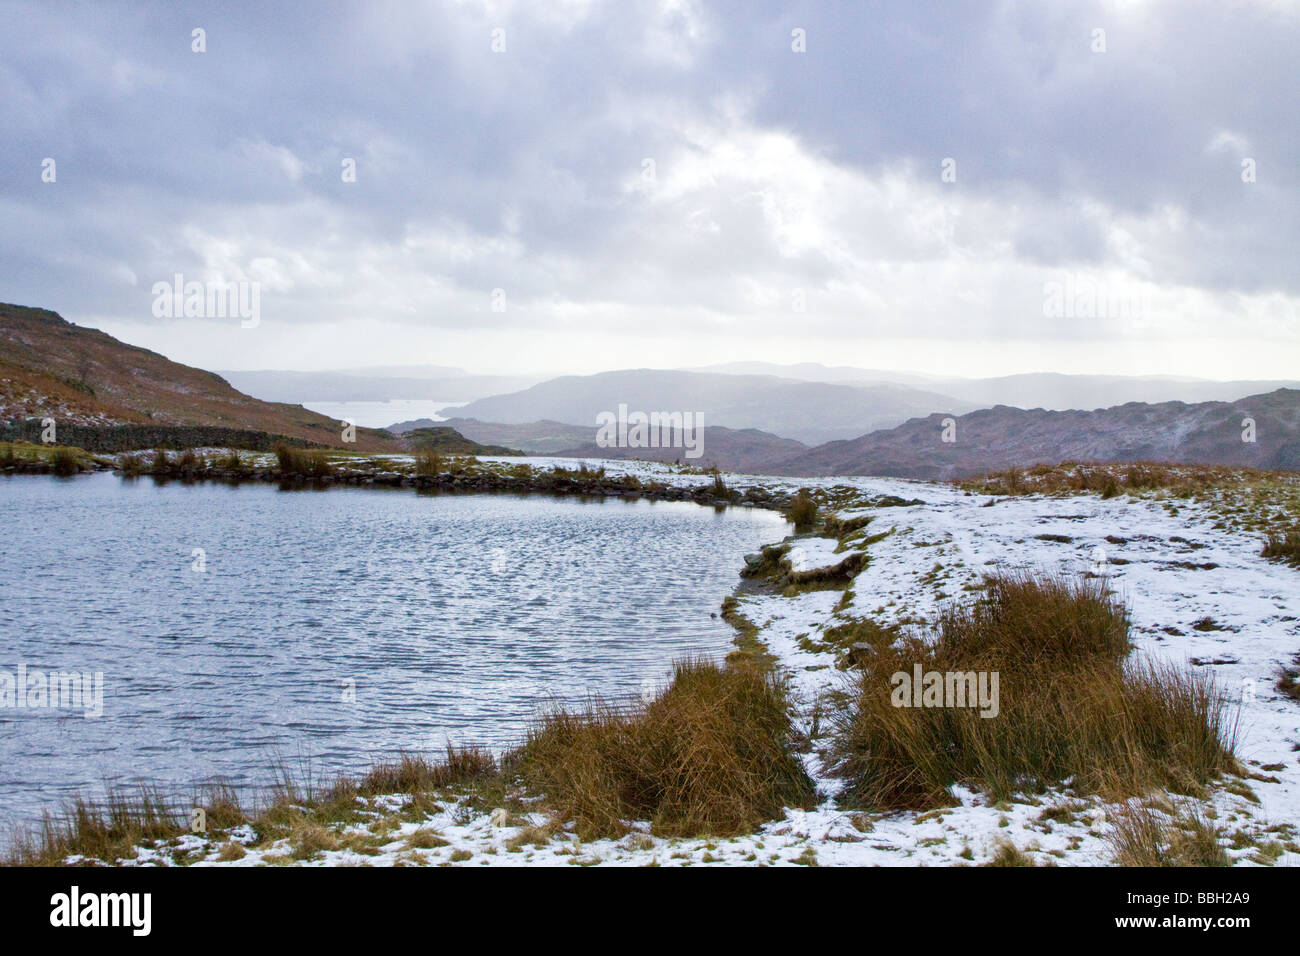 British paesaggi invernali Alcock Tarn con lago Widermere nella distanza. Parco Nazionale del Distretto dei Laghi Cumbria Foto Stock